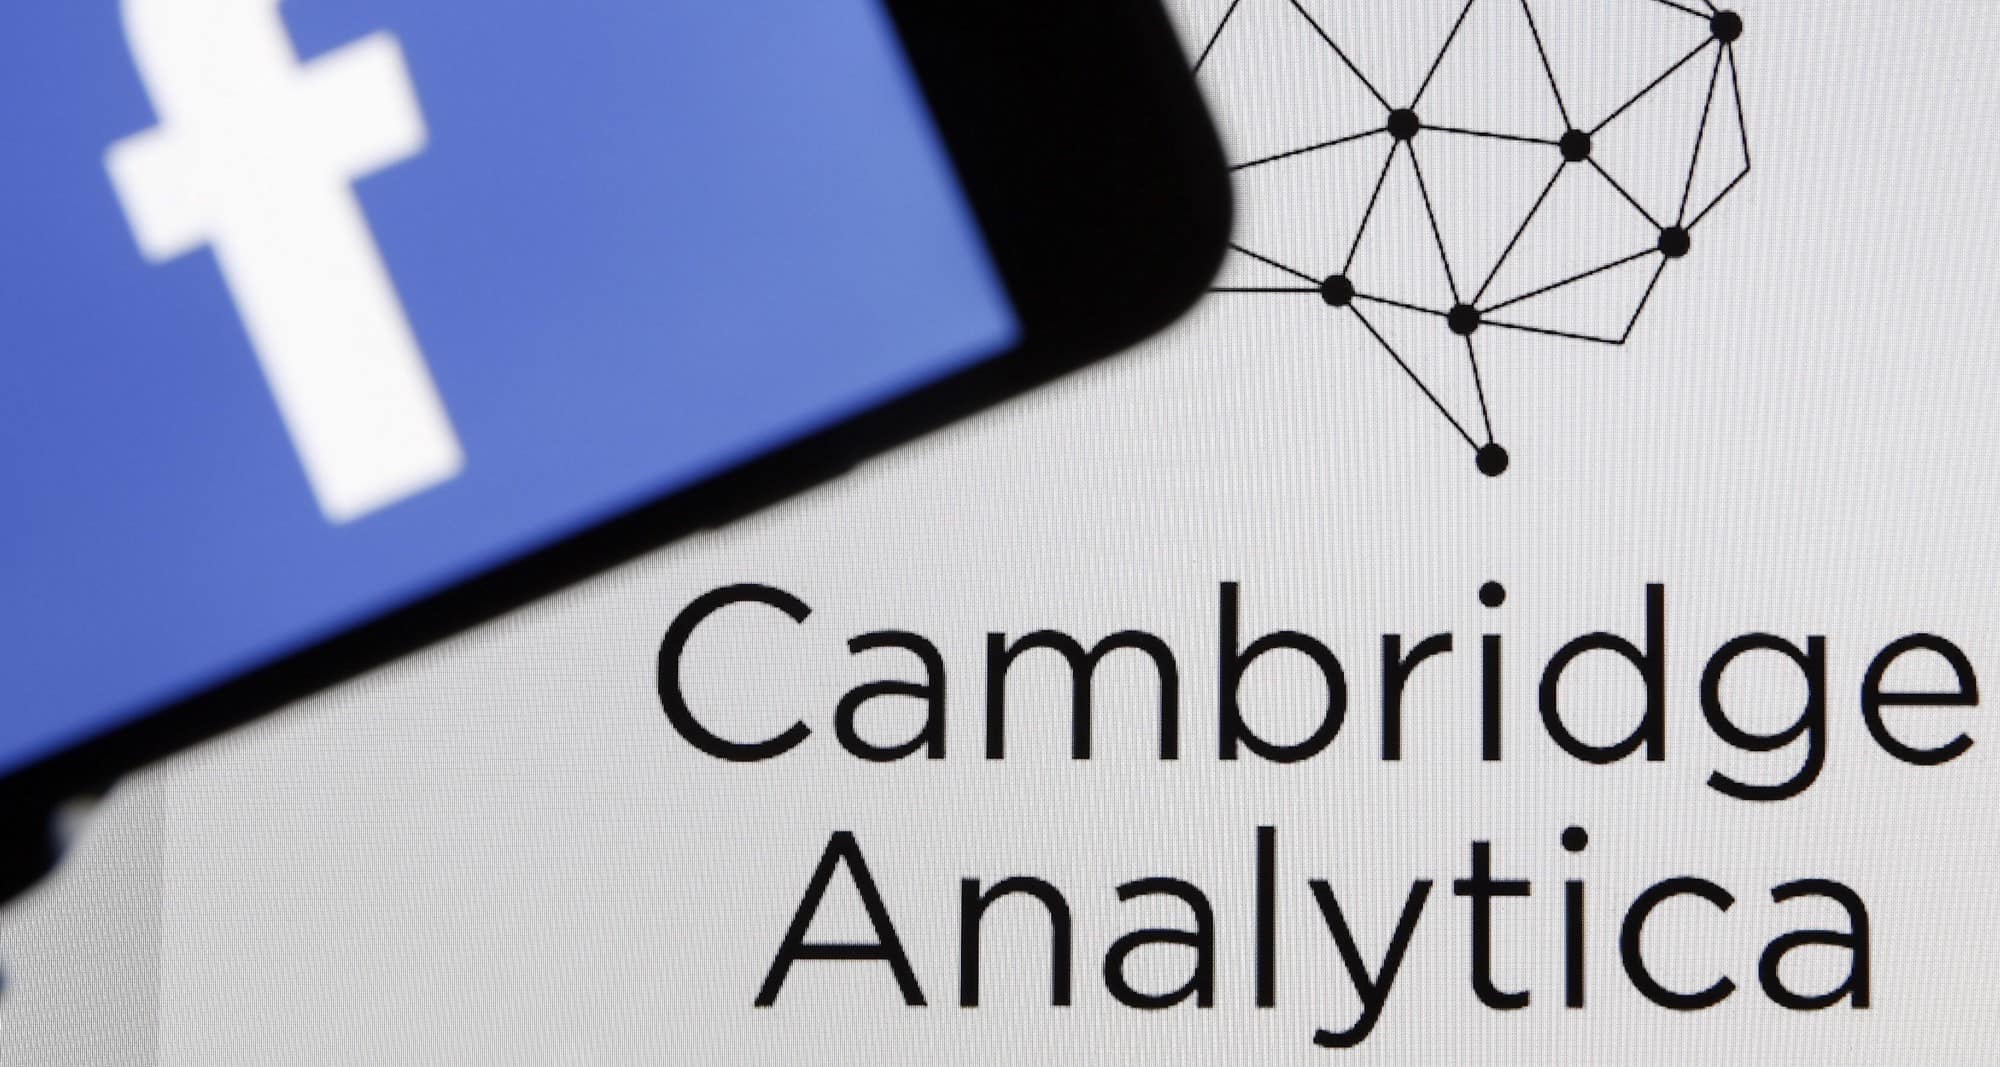 Le scandale Cambridge Analytica remet en question la confiance des marchés et des utilisateurs envers Facebook.